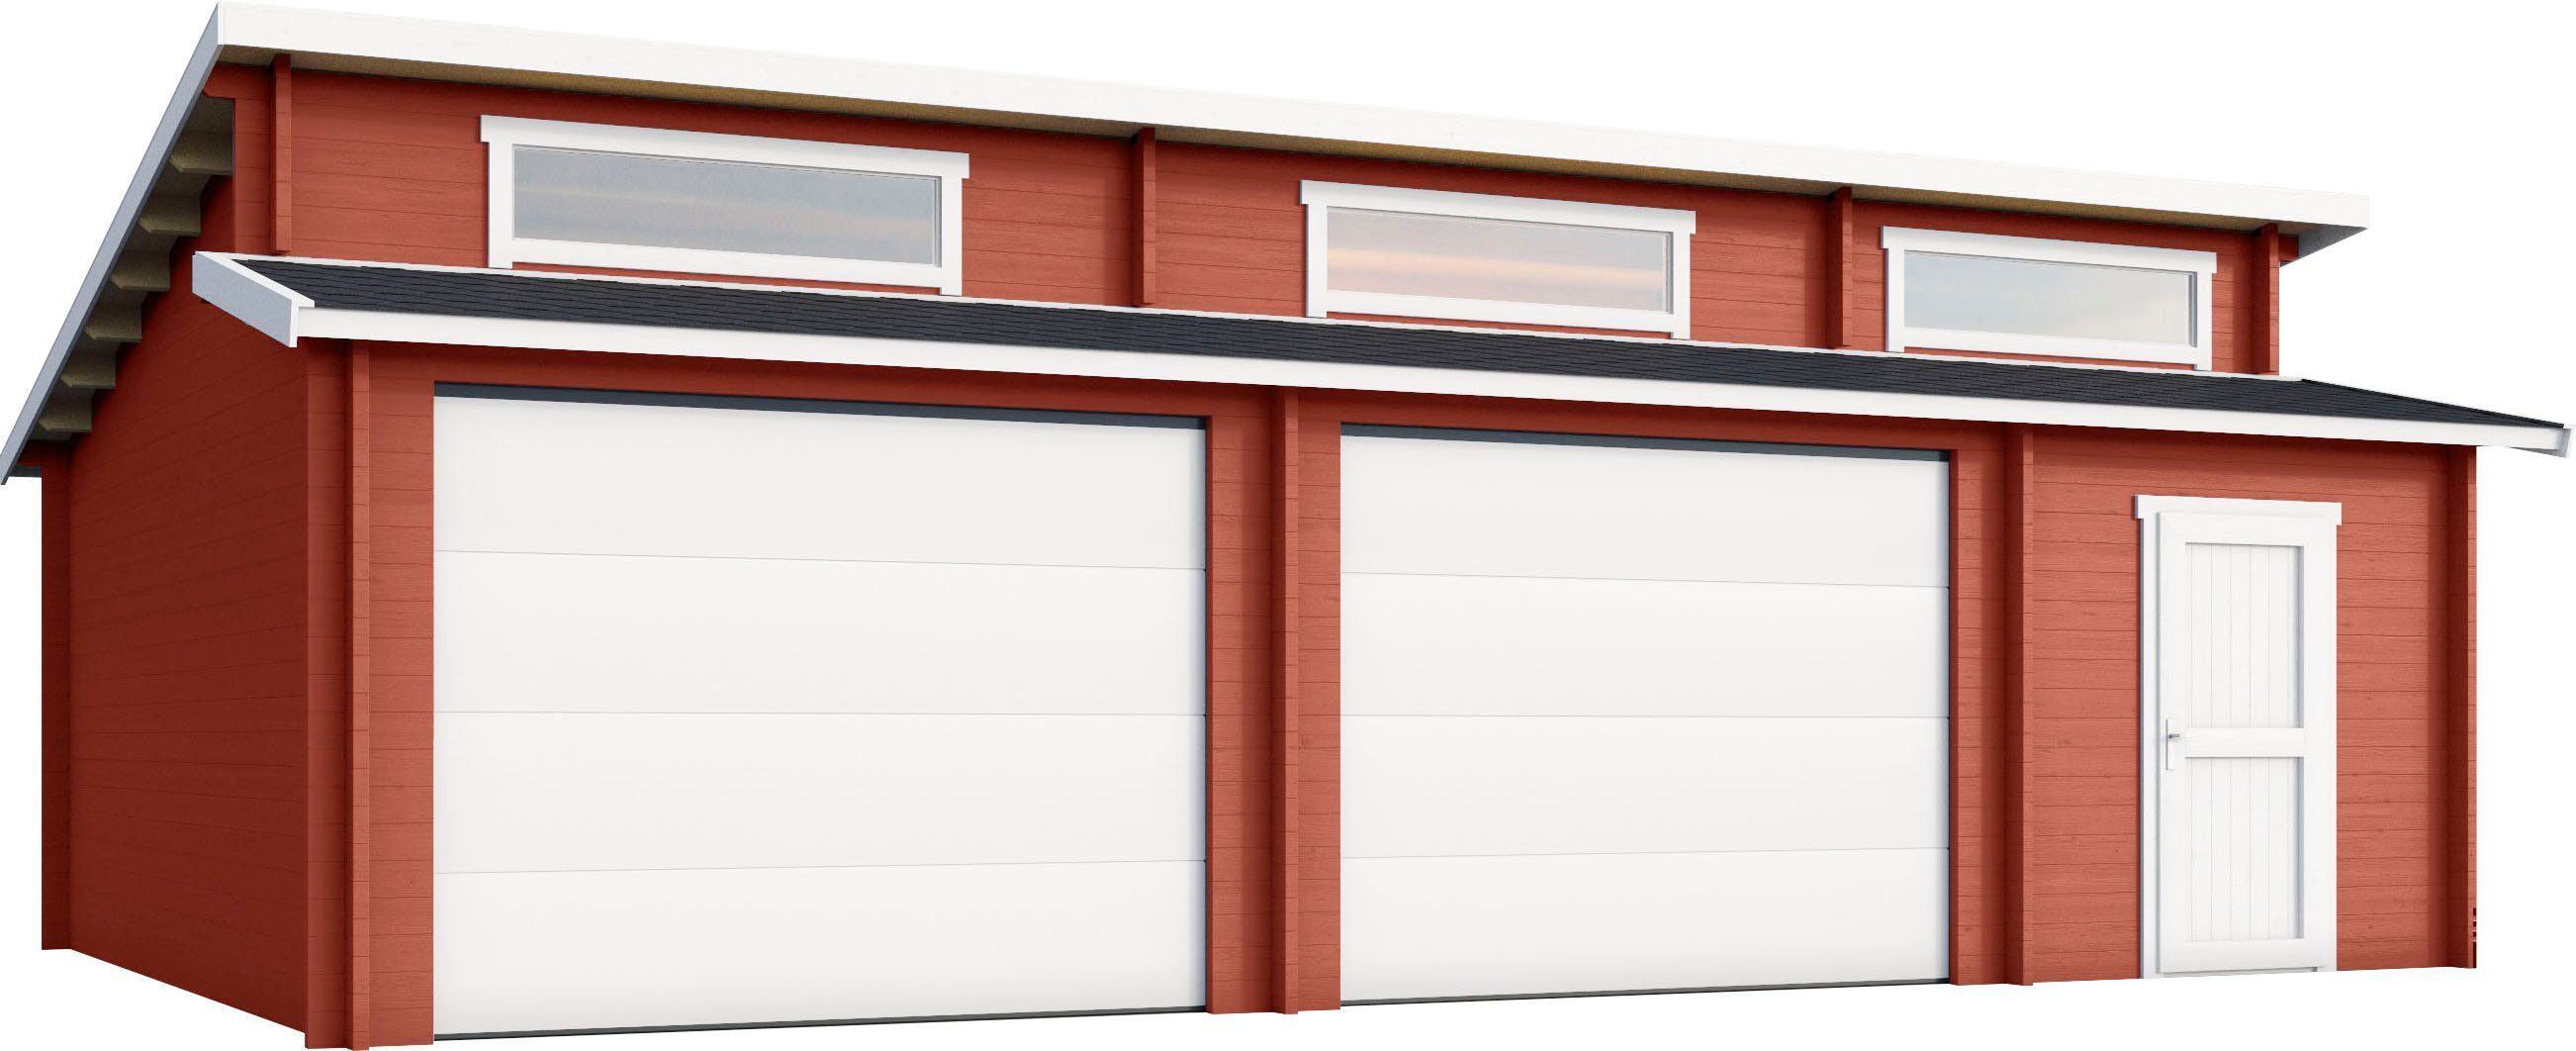 Für Garage 2 geeignet), schwedenrot Hawaii (Set, Fahrzeuge + Sektionaltore Garage LASITA MAJA 2